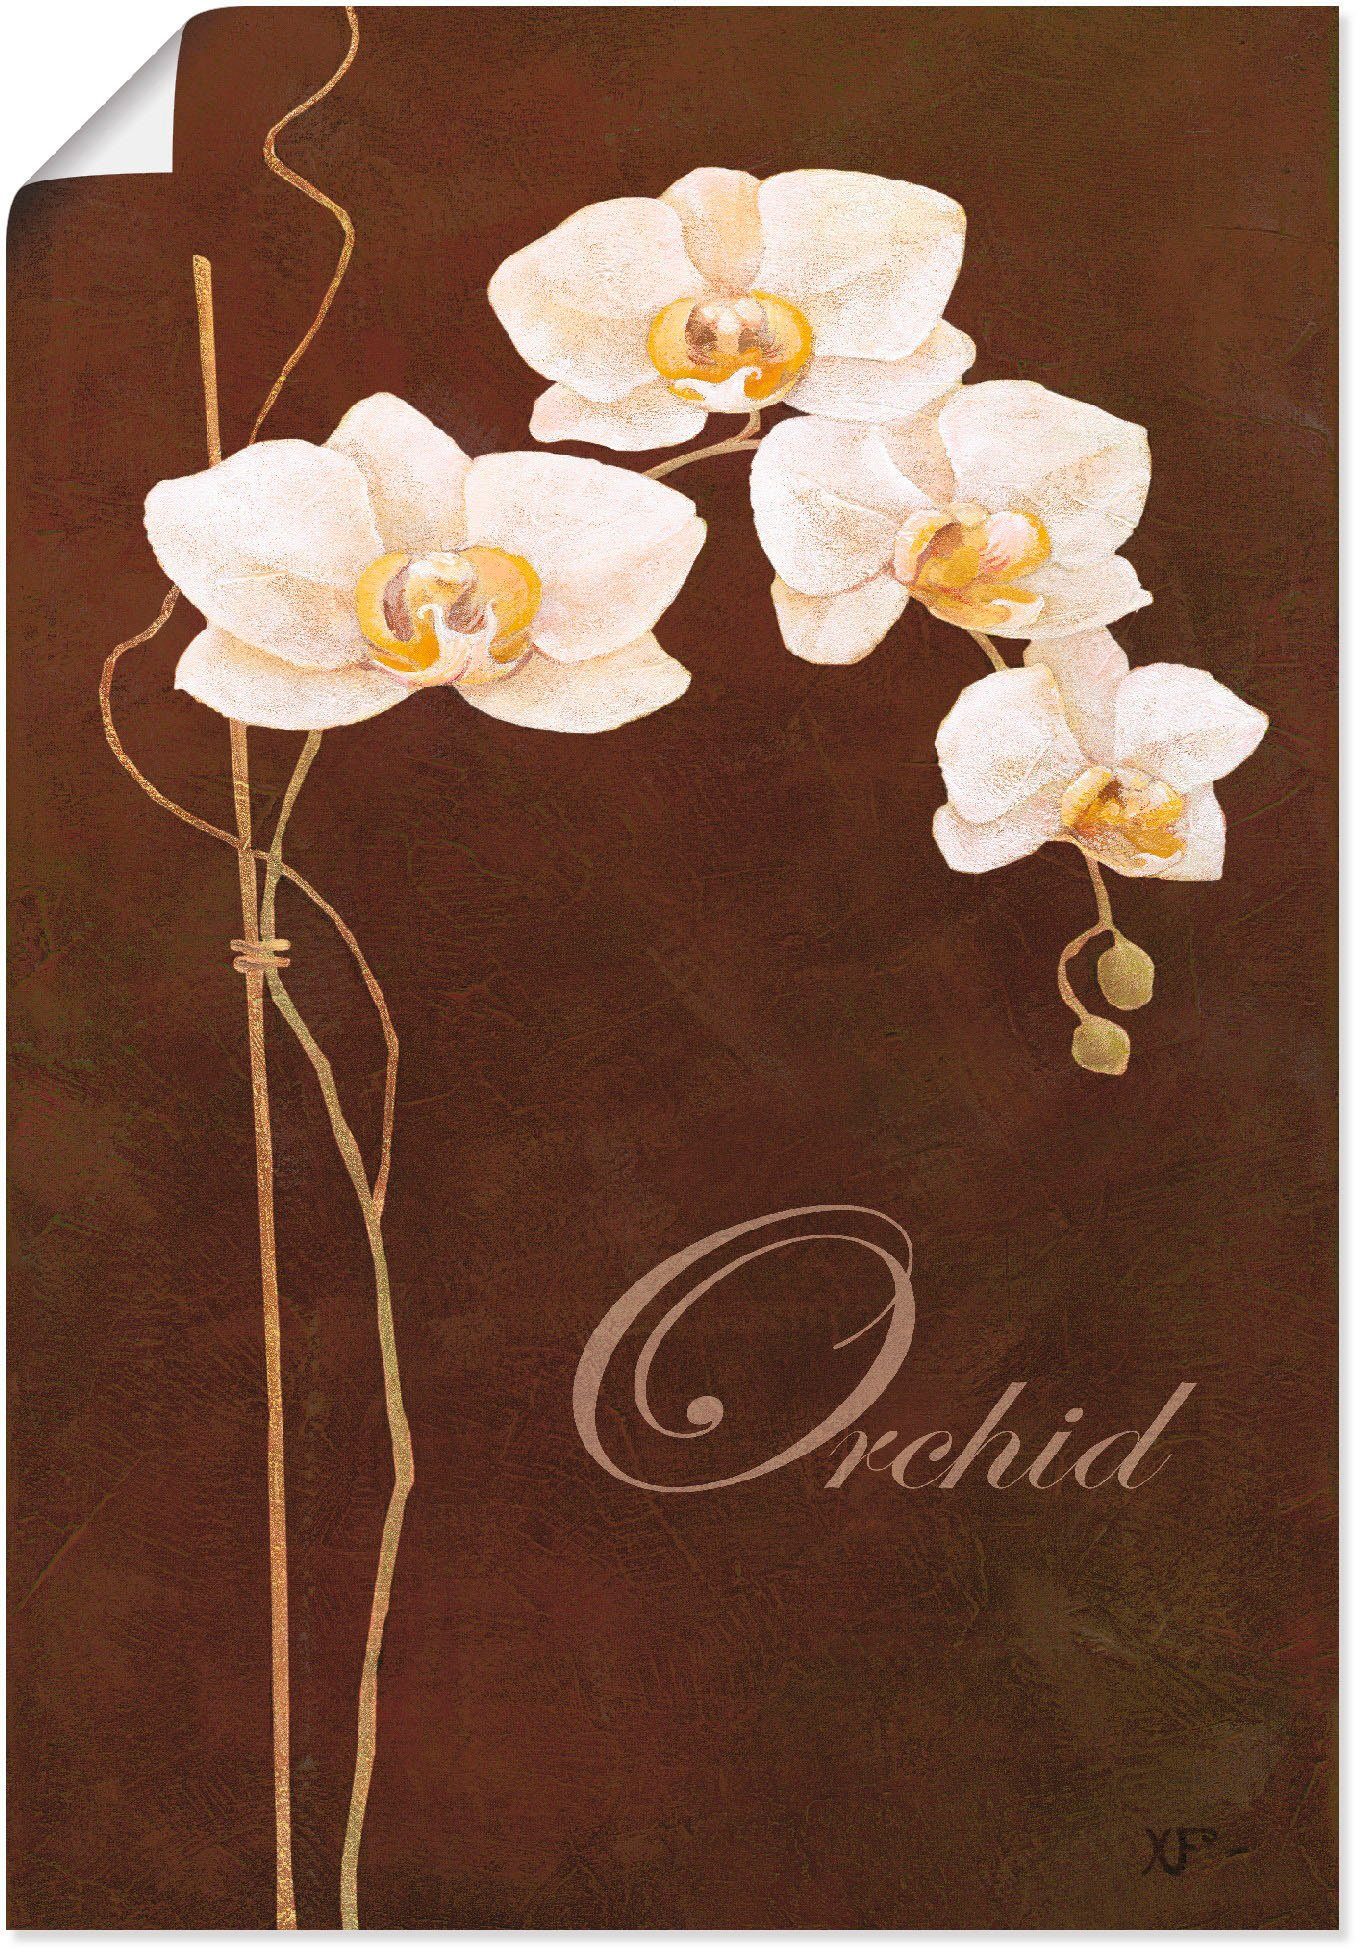 Artland Artprint Fijne orchidee in vele afmetingen & productsoorten - artprint van aluminium / artprint voor buiten, artprint op linnen, poster, muursticker / wandfolie ook geschik